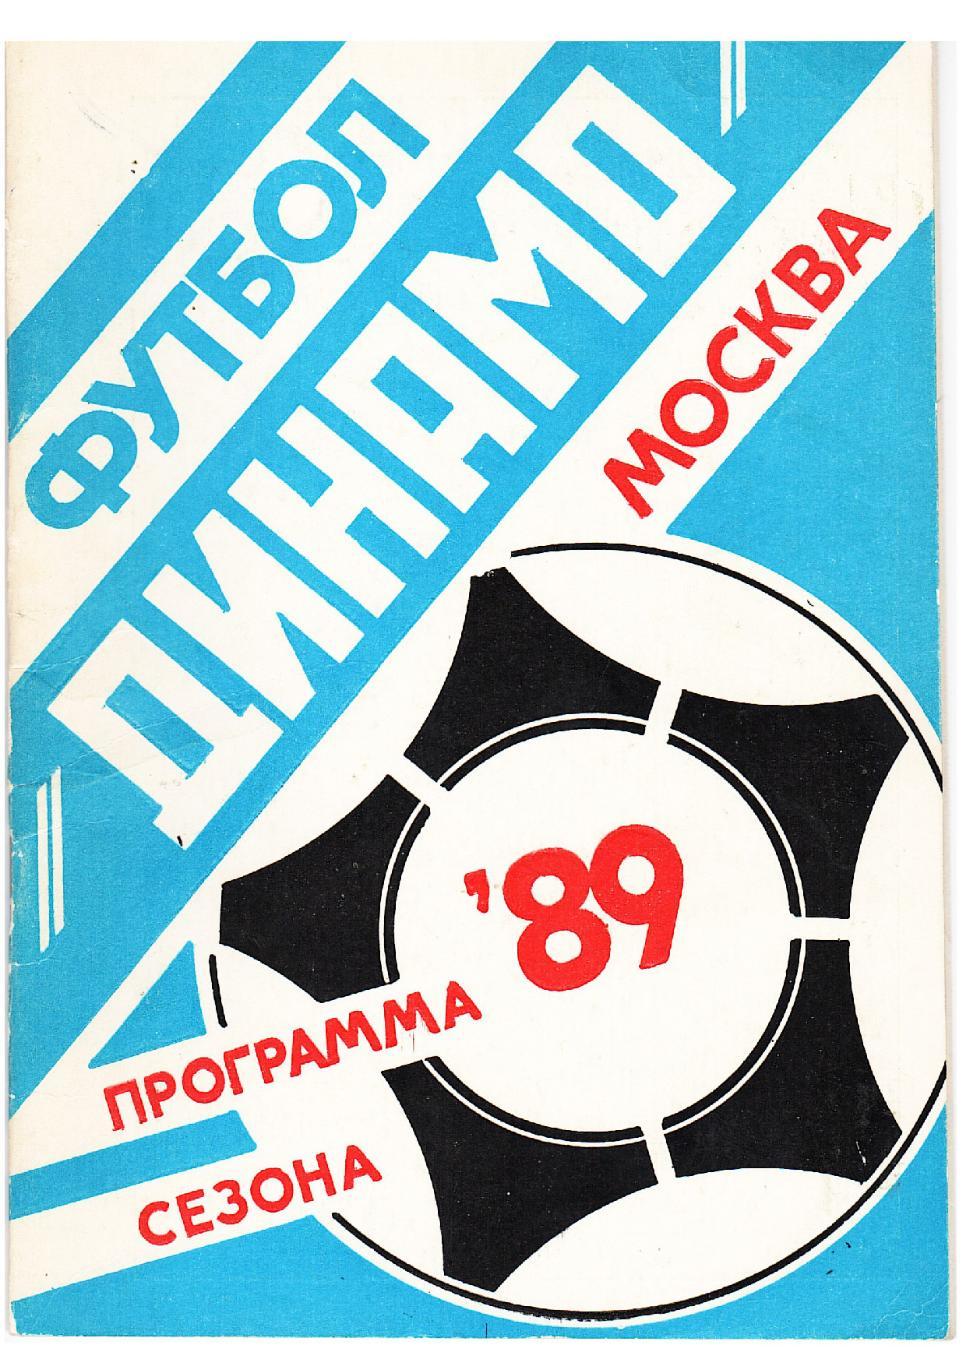 Футбол–89. Динамо (Москва). Программа сезона.